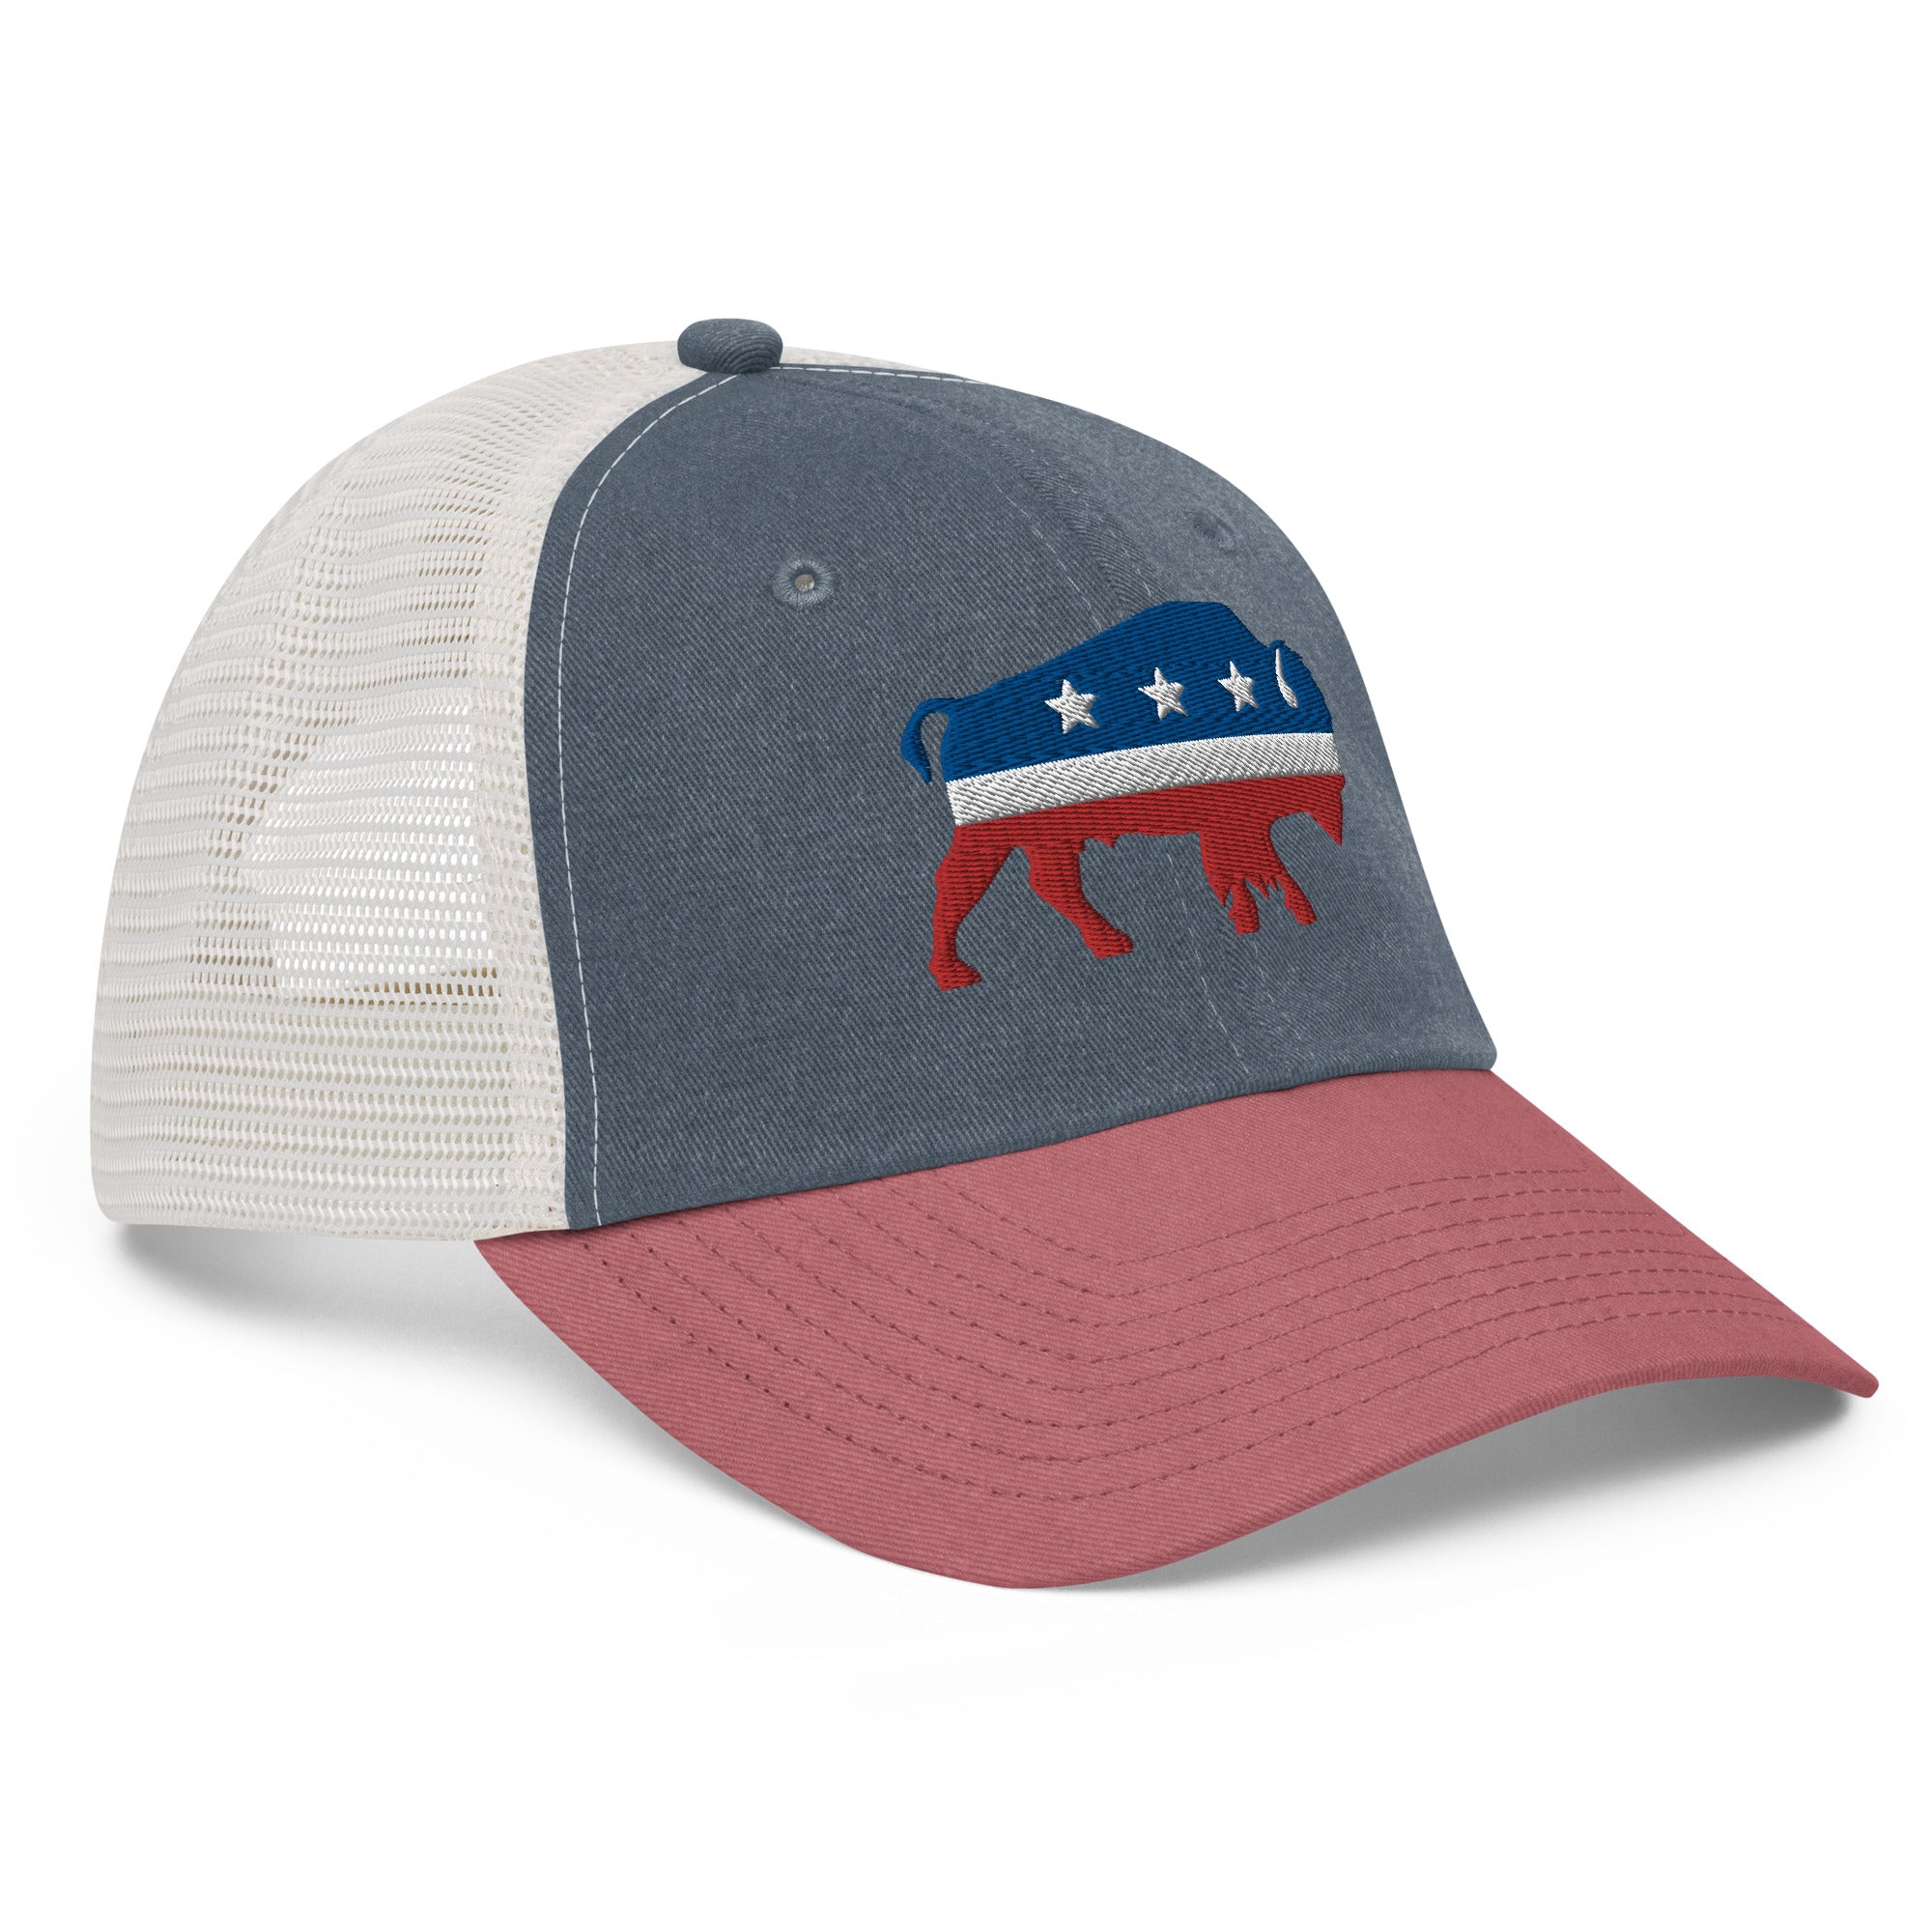 Bison Pigment-Dyed Trucker Hat